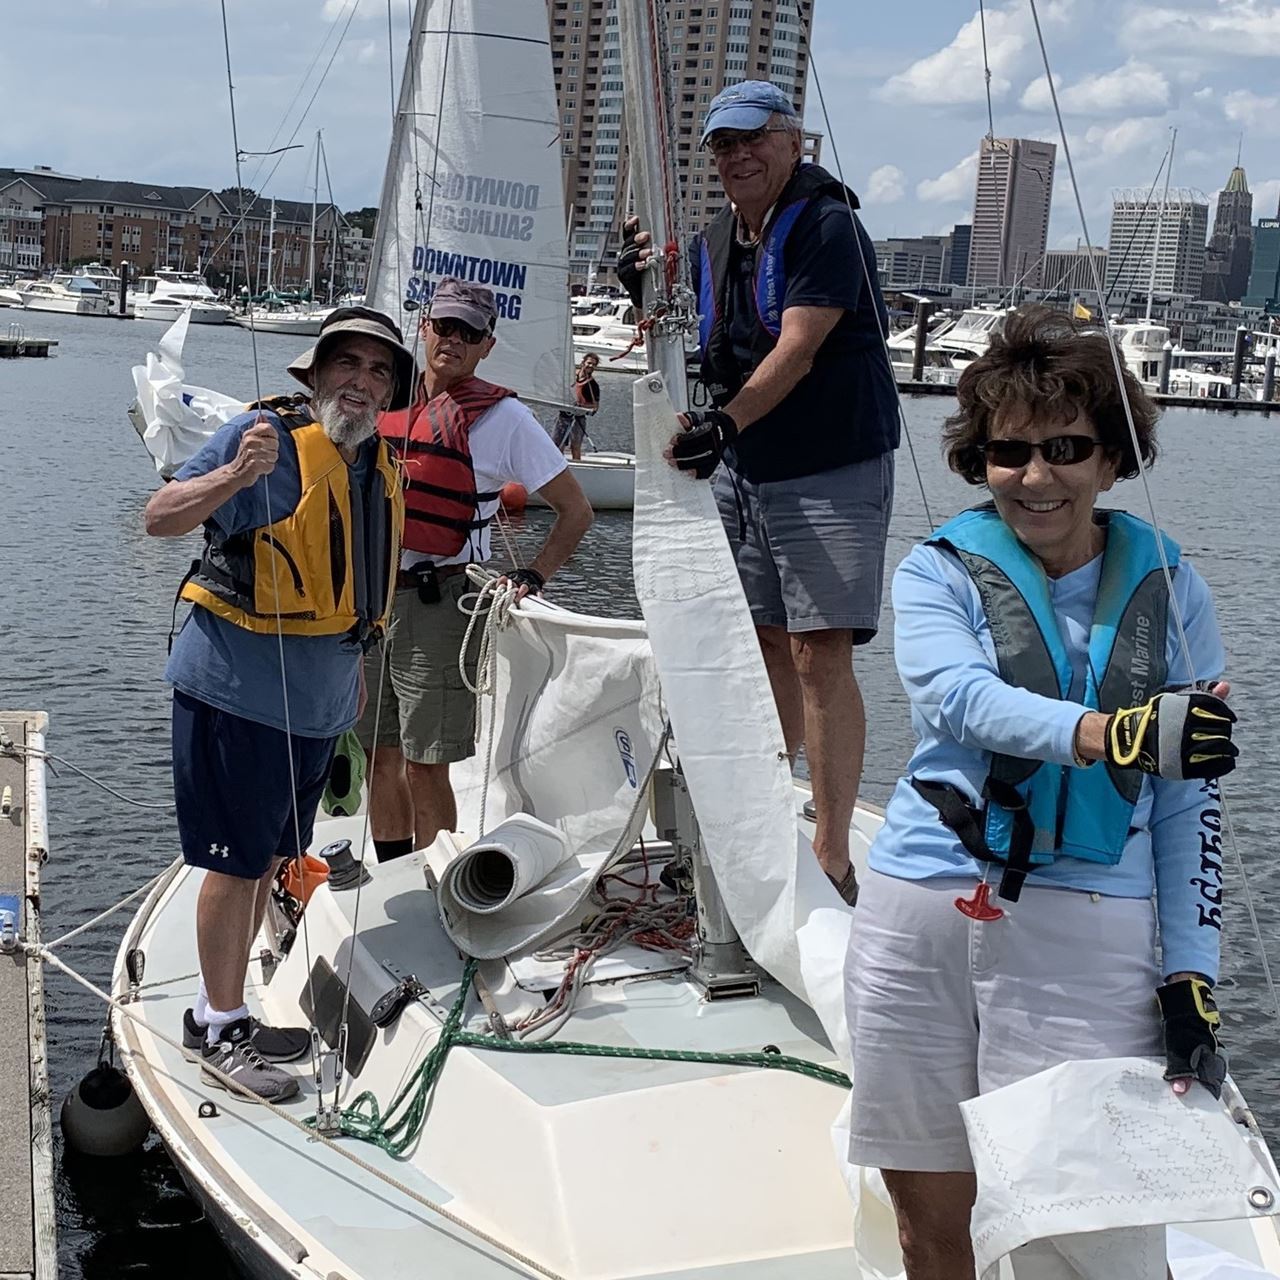 "Sailing is Fun" crew sailors enjoy an afternoon of sailing